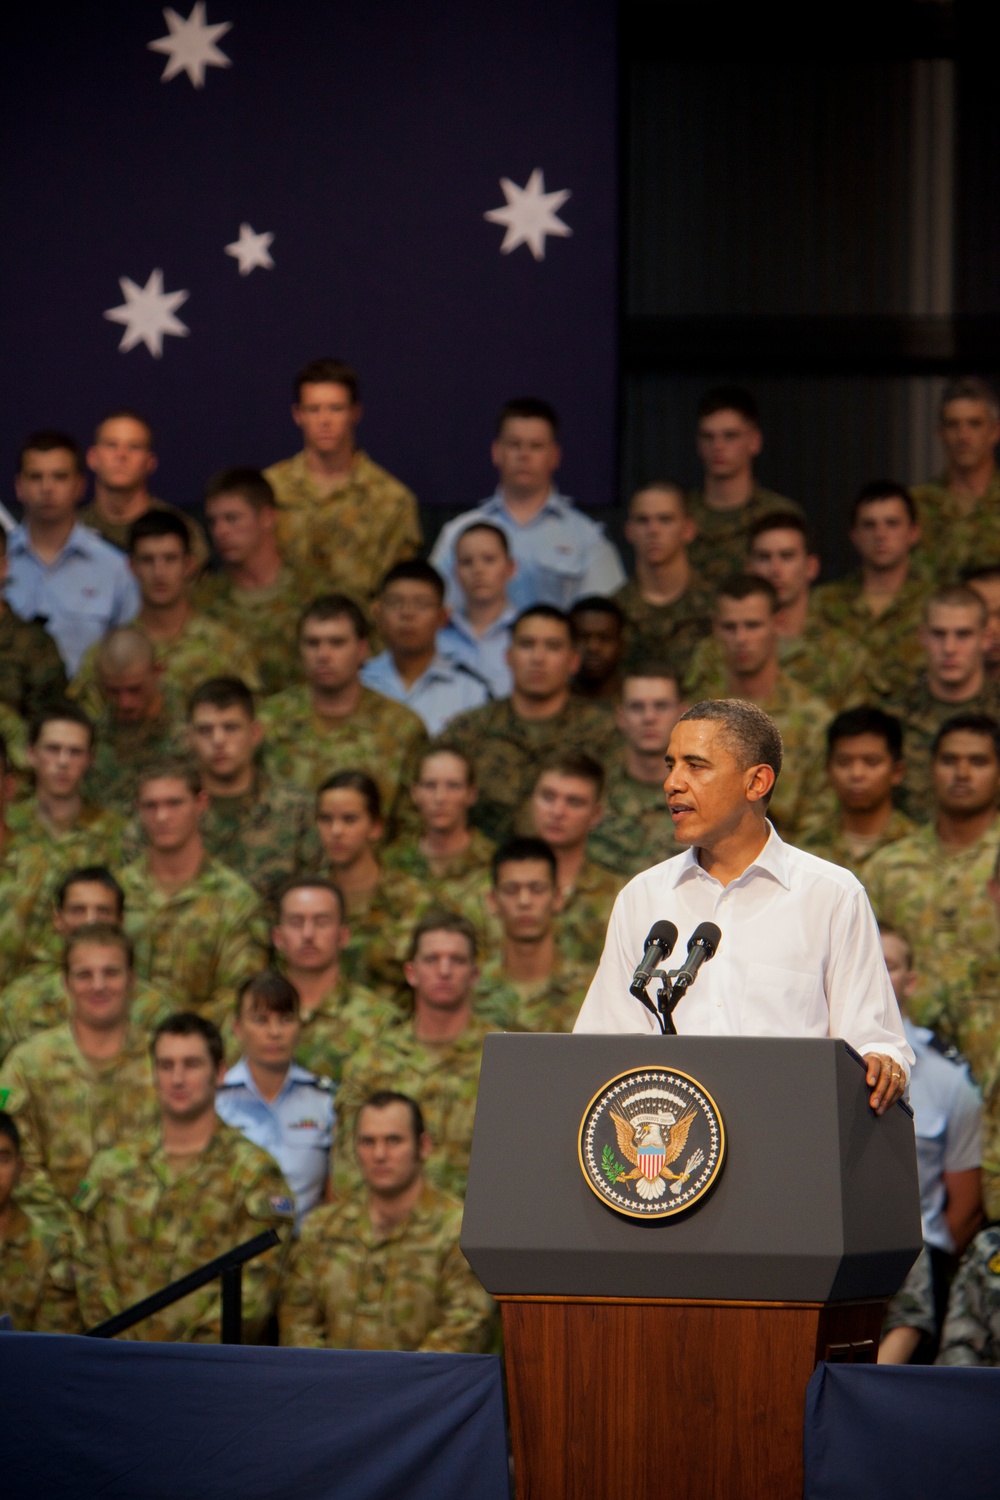 Obama visits Australia